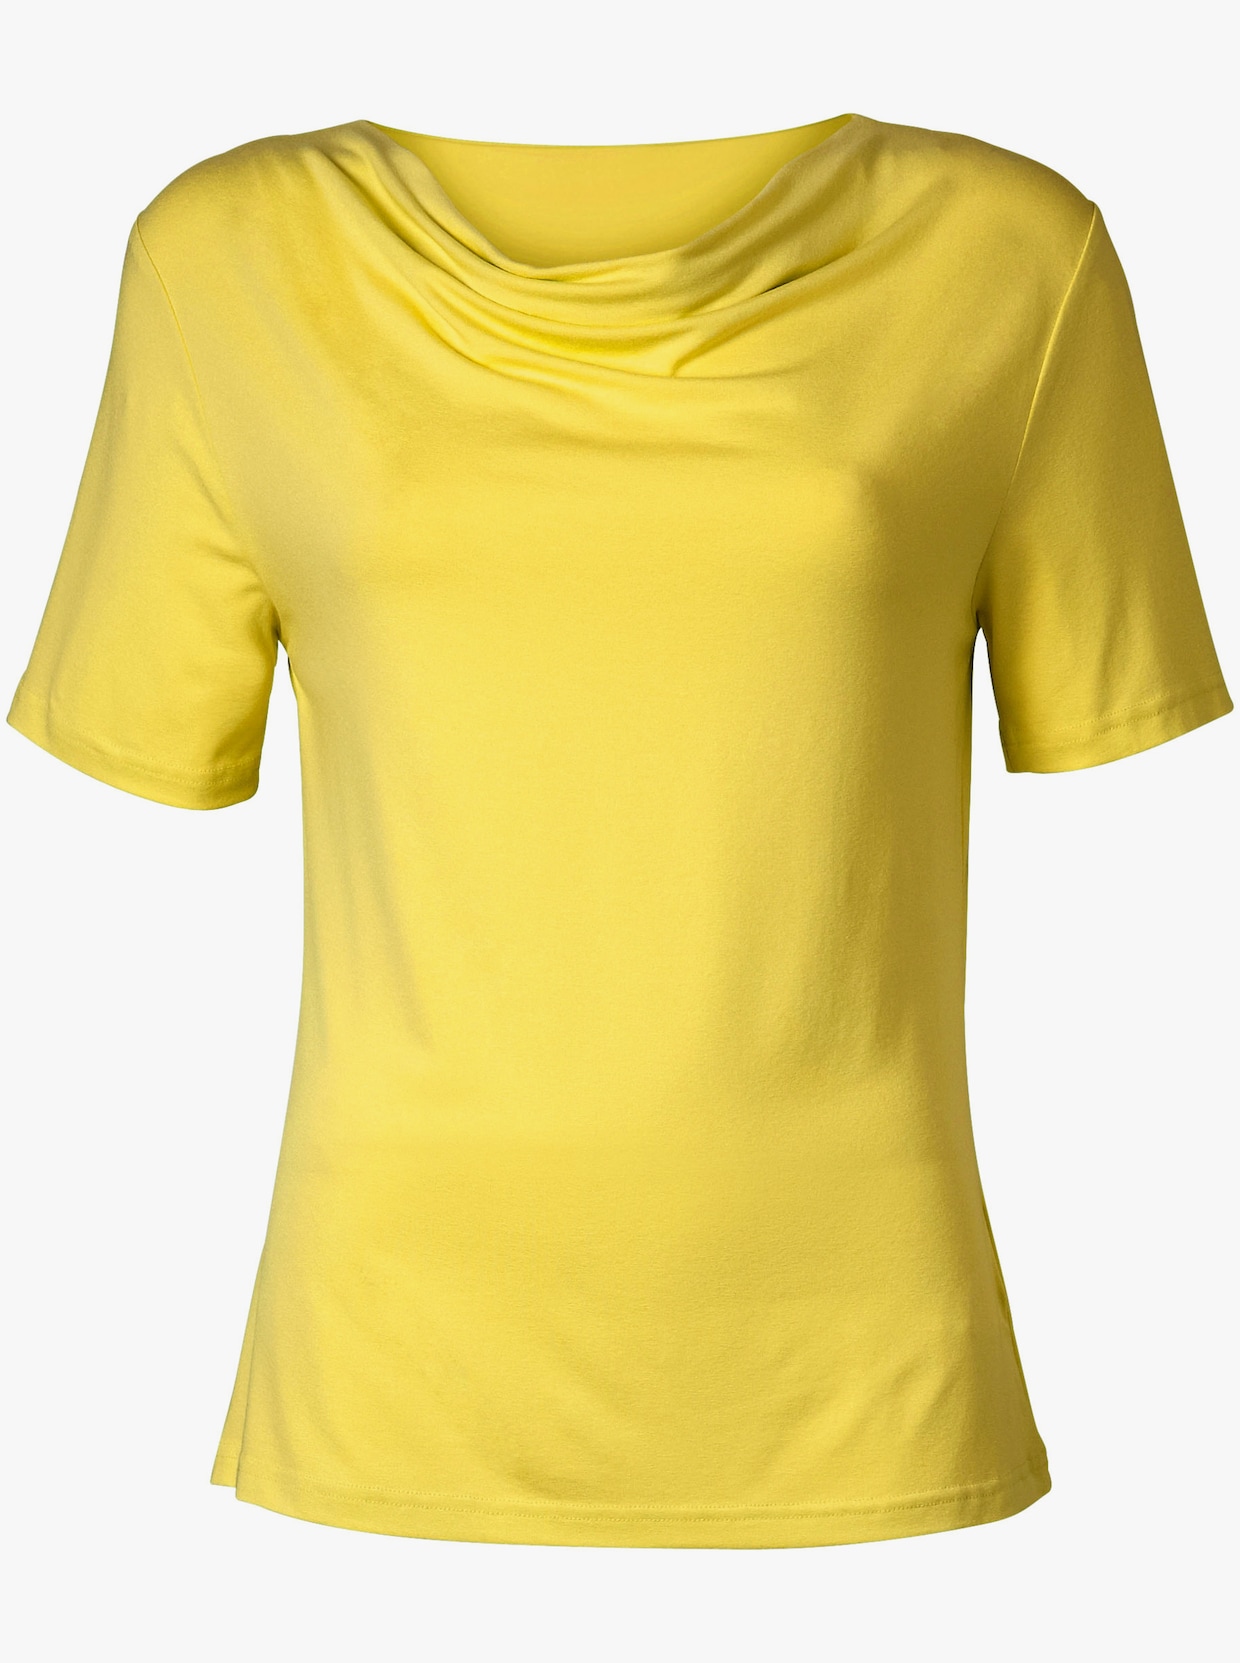 Tričko s vodopádovým golierom - citrónová žltá